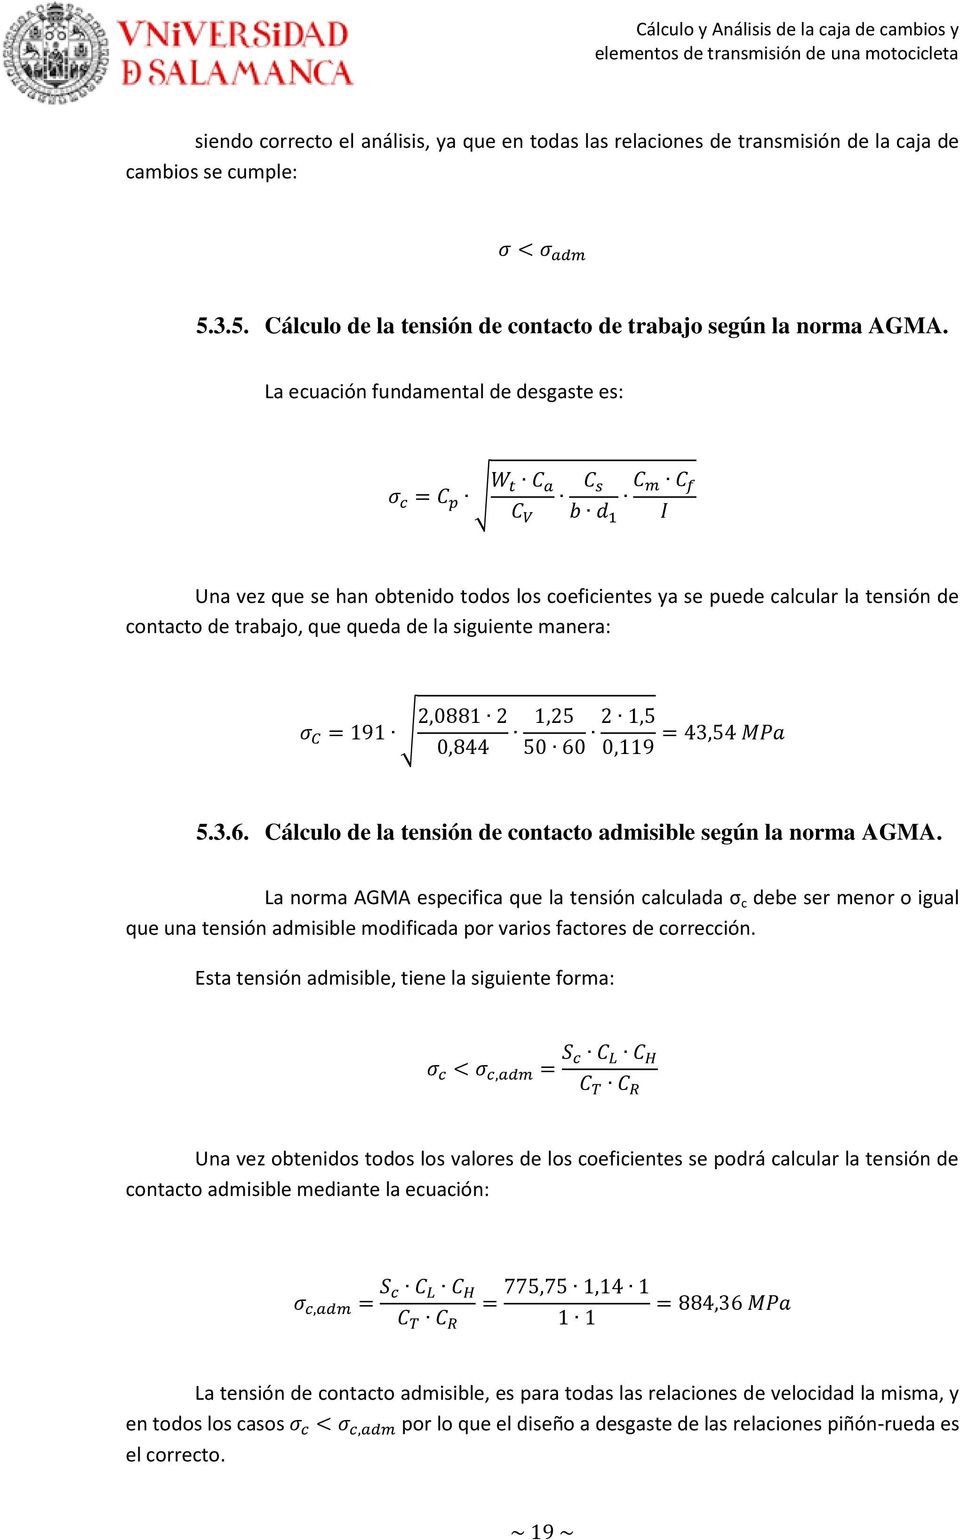 Cálculo de la tensión de contacto admisible según la norma AGMA.